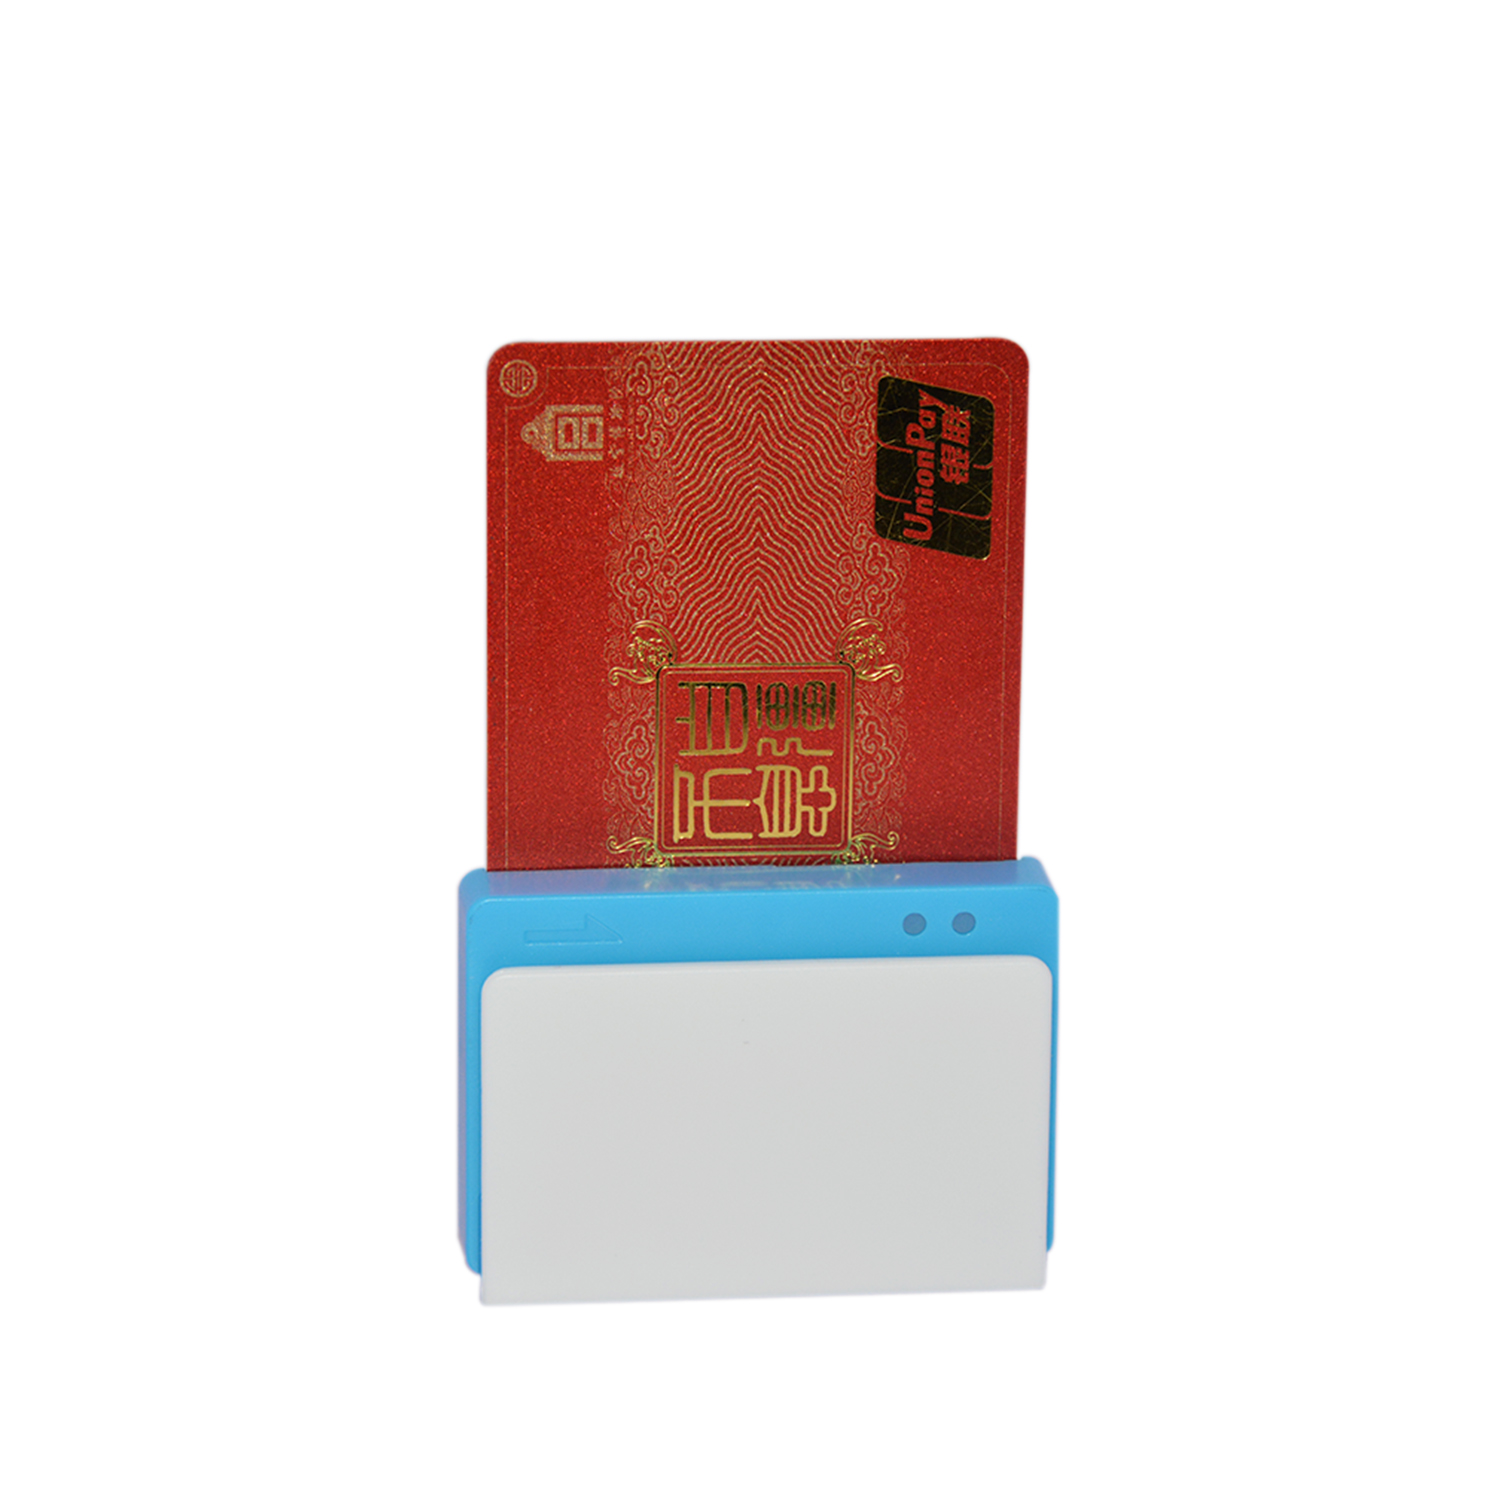 Heißer Verkauf Bluetooth Android IOS Mobile Kartenleser für mobiles Bezahlen MPR100